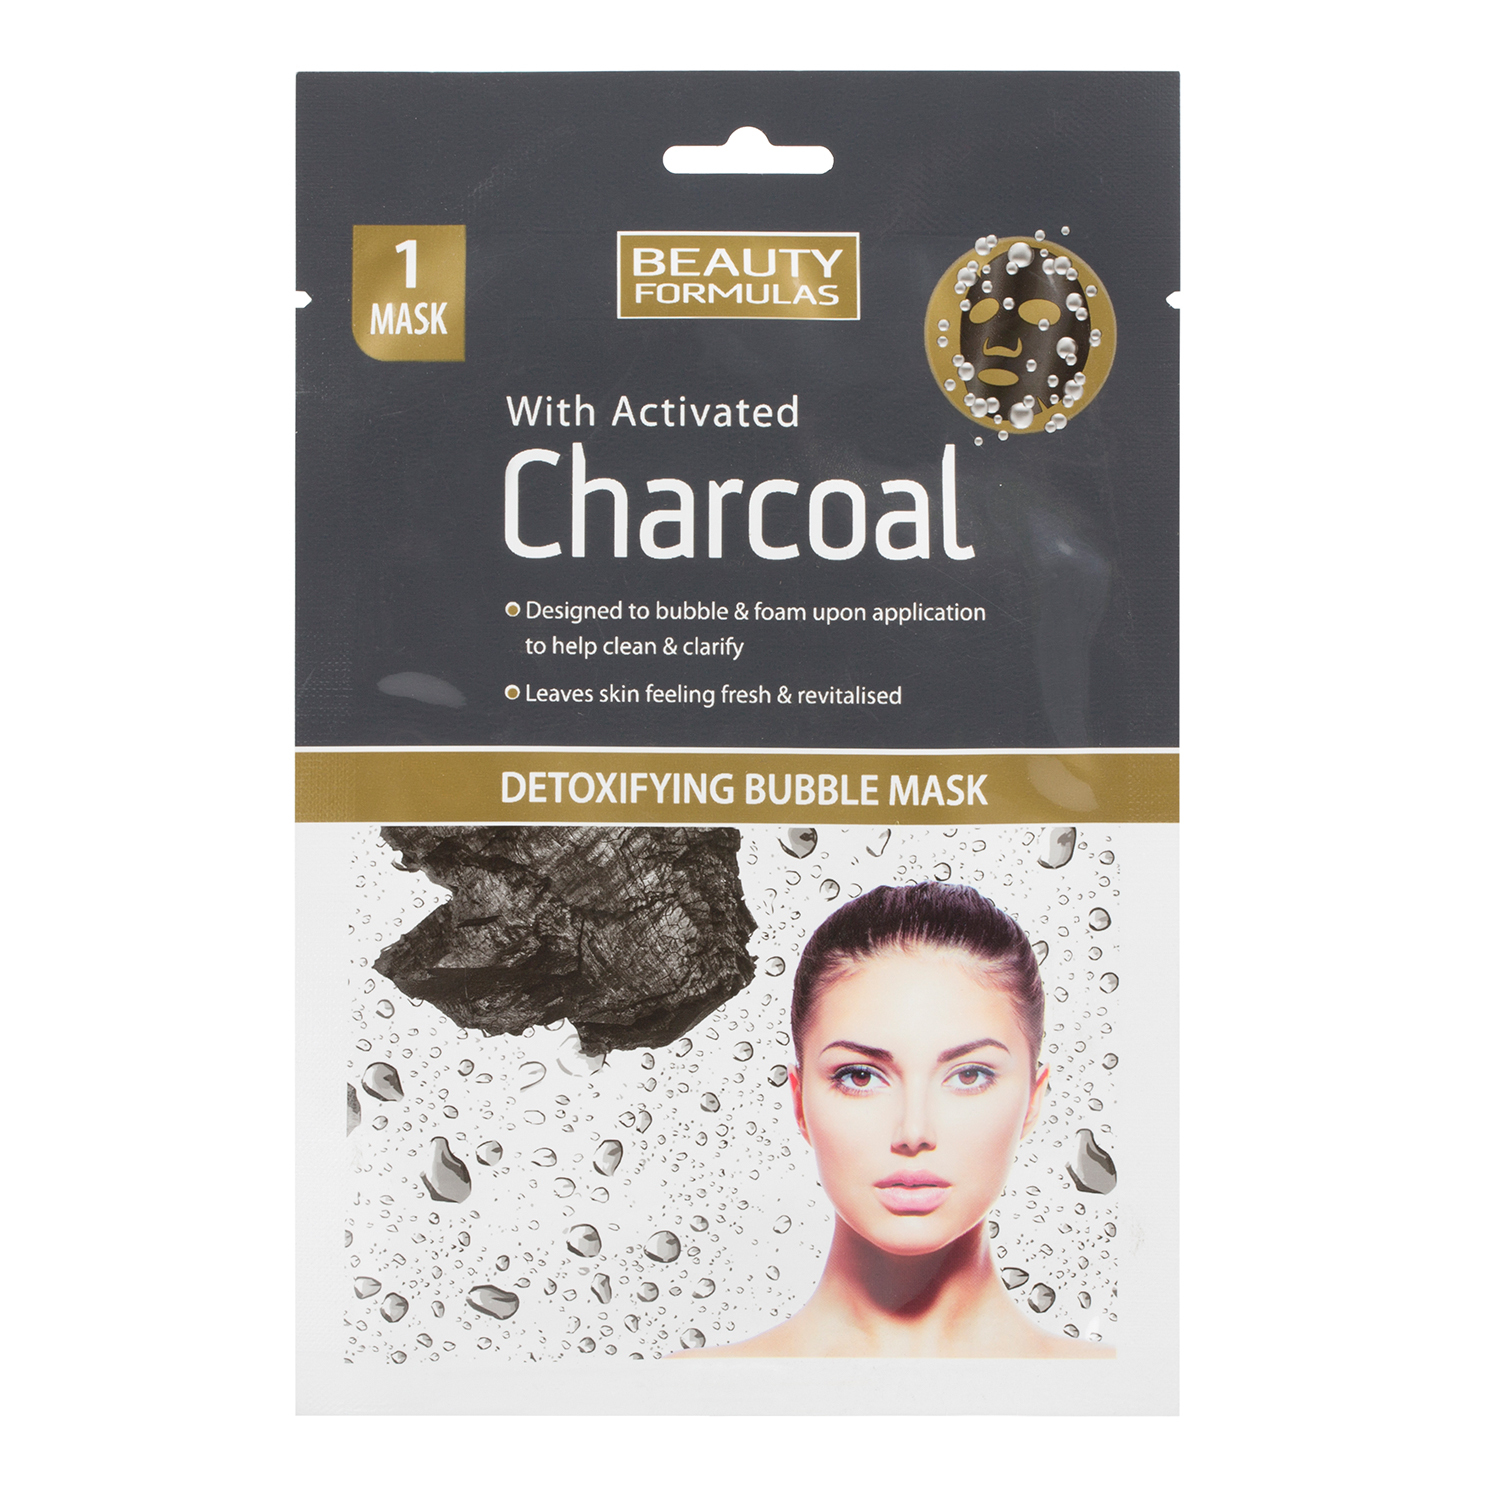 Beauty Formulas Charcoal Detoxifying Bubble Mask Image